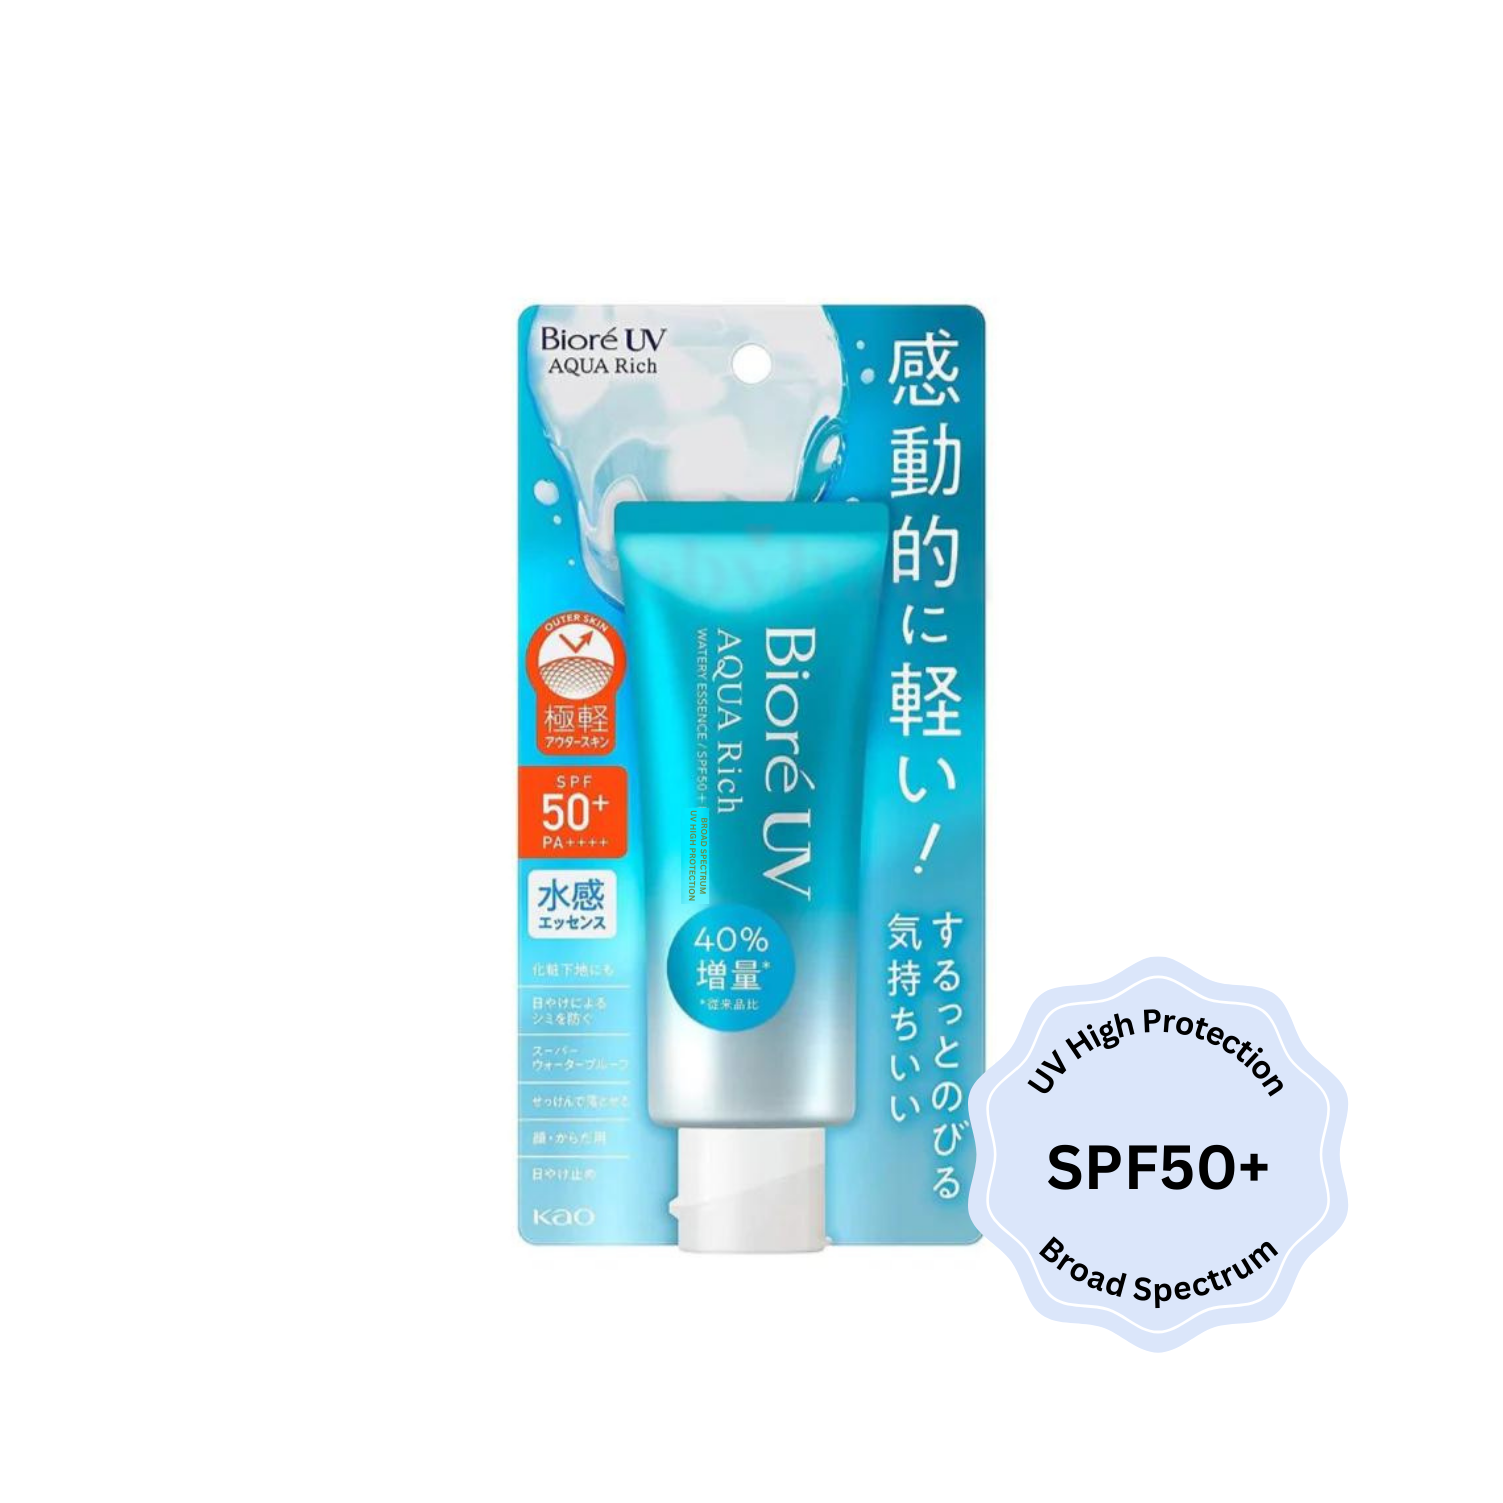 Biore UV Aqua Rich Watery Essence SPF50+ Broad Spectrum